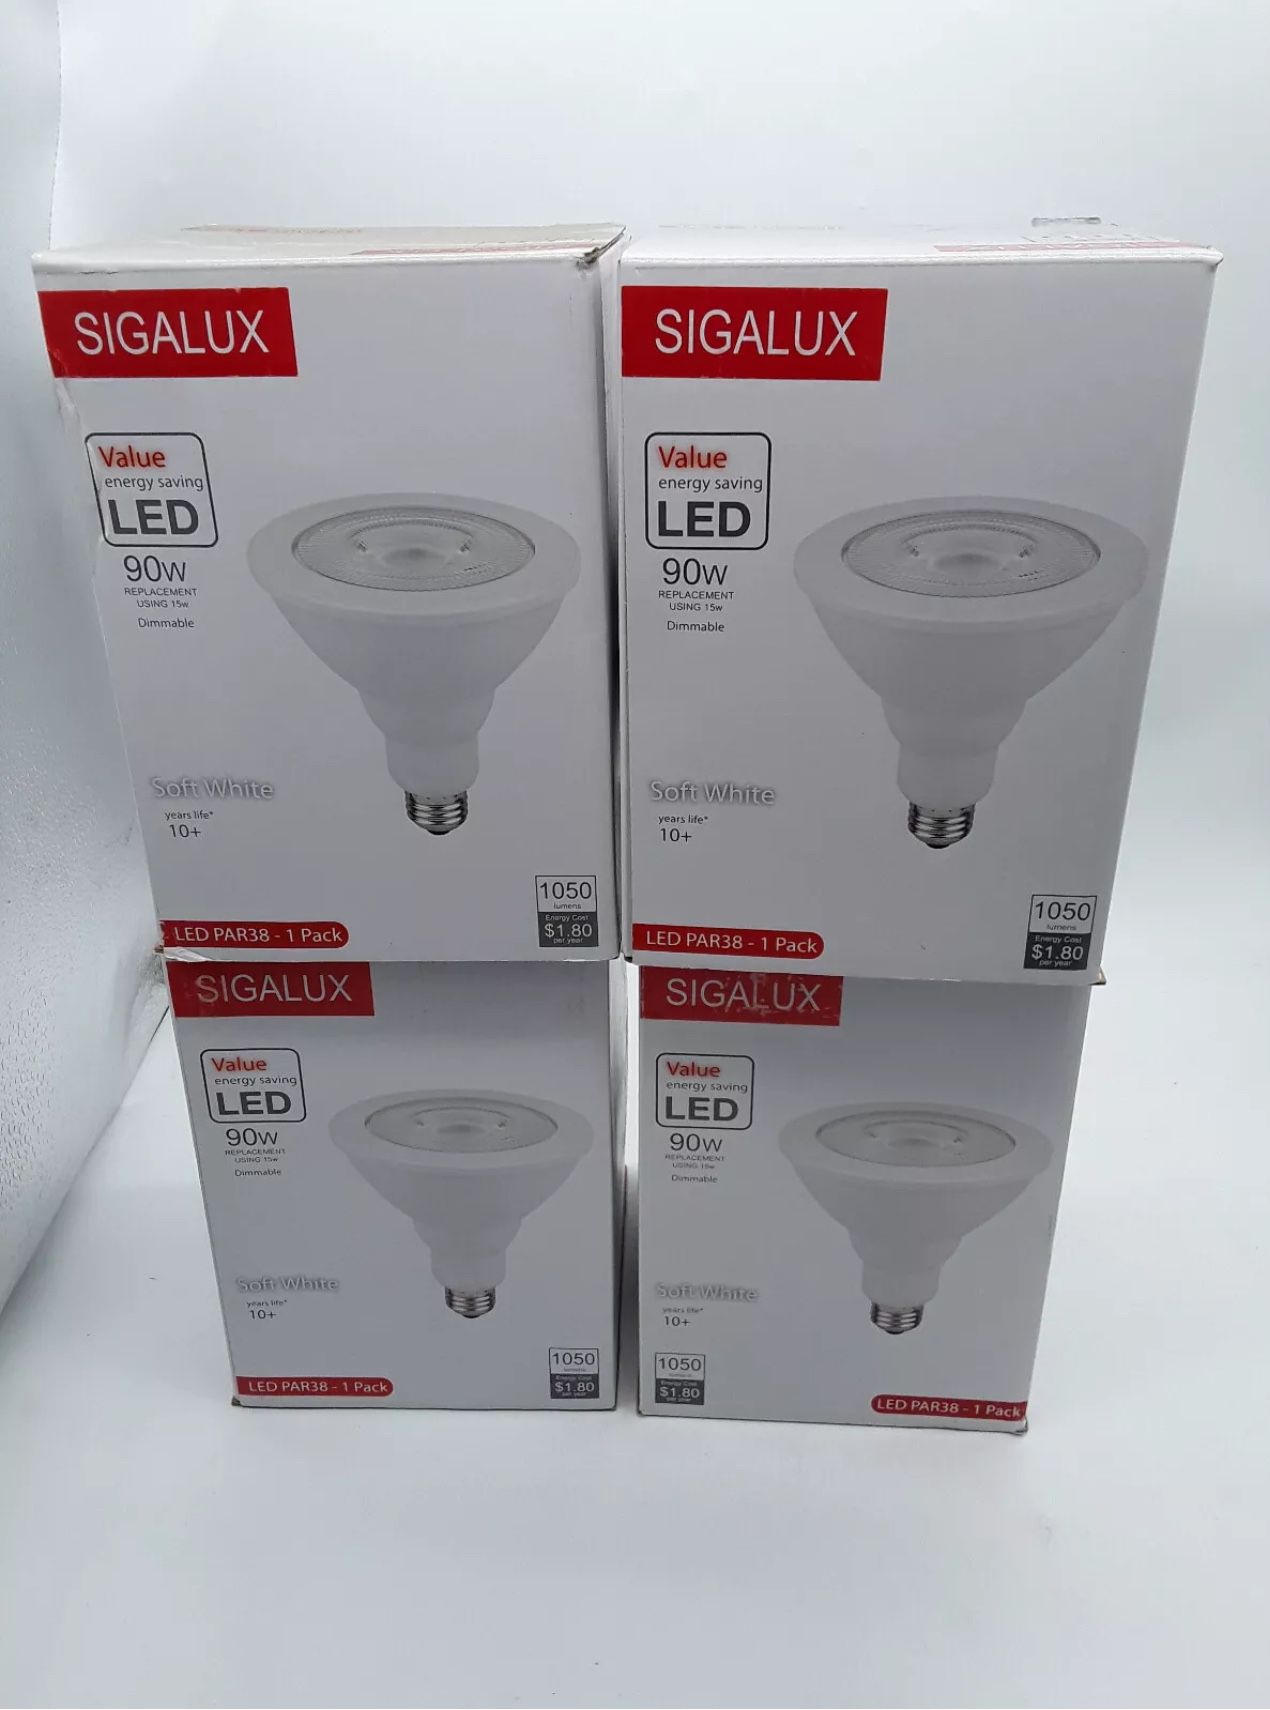 Sigalux LED Par38 Dim 1050 Lumens 15W